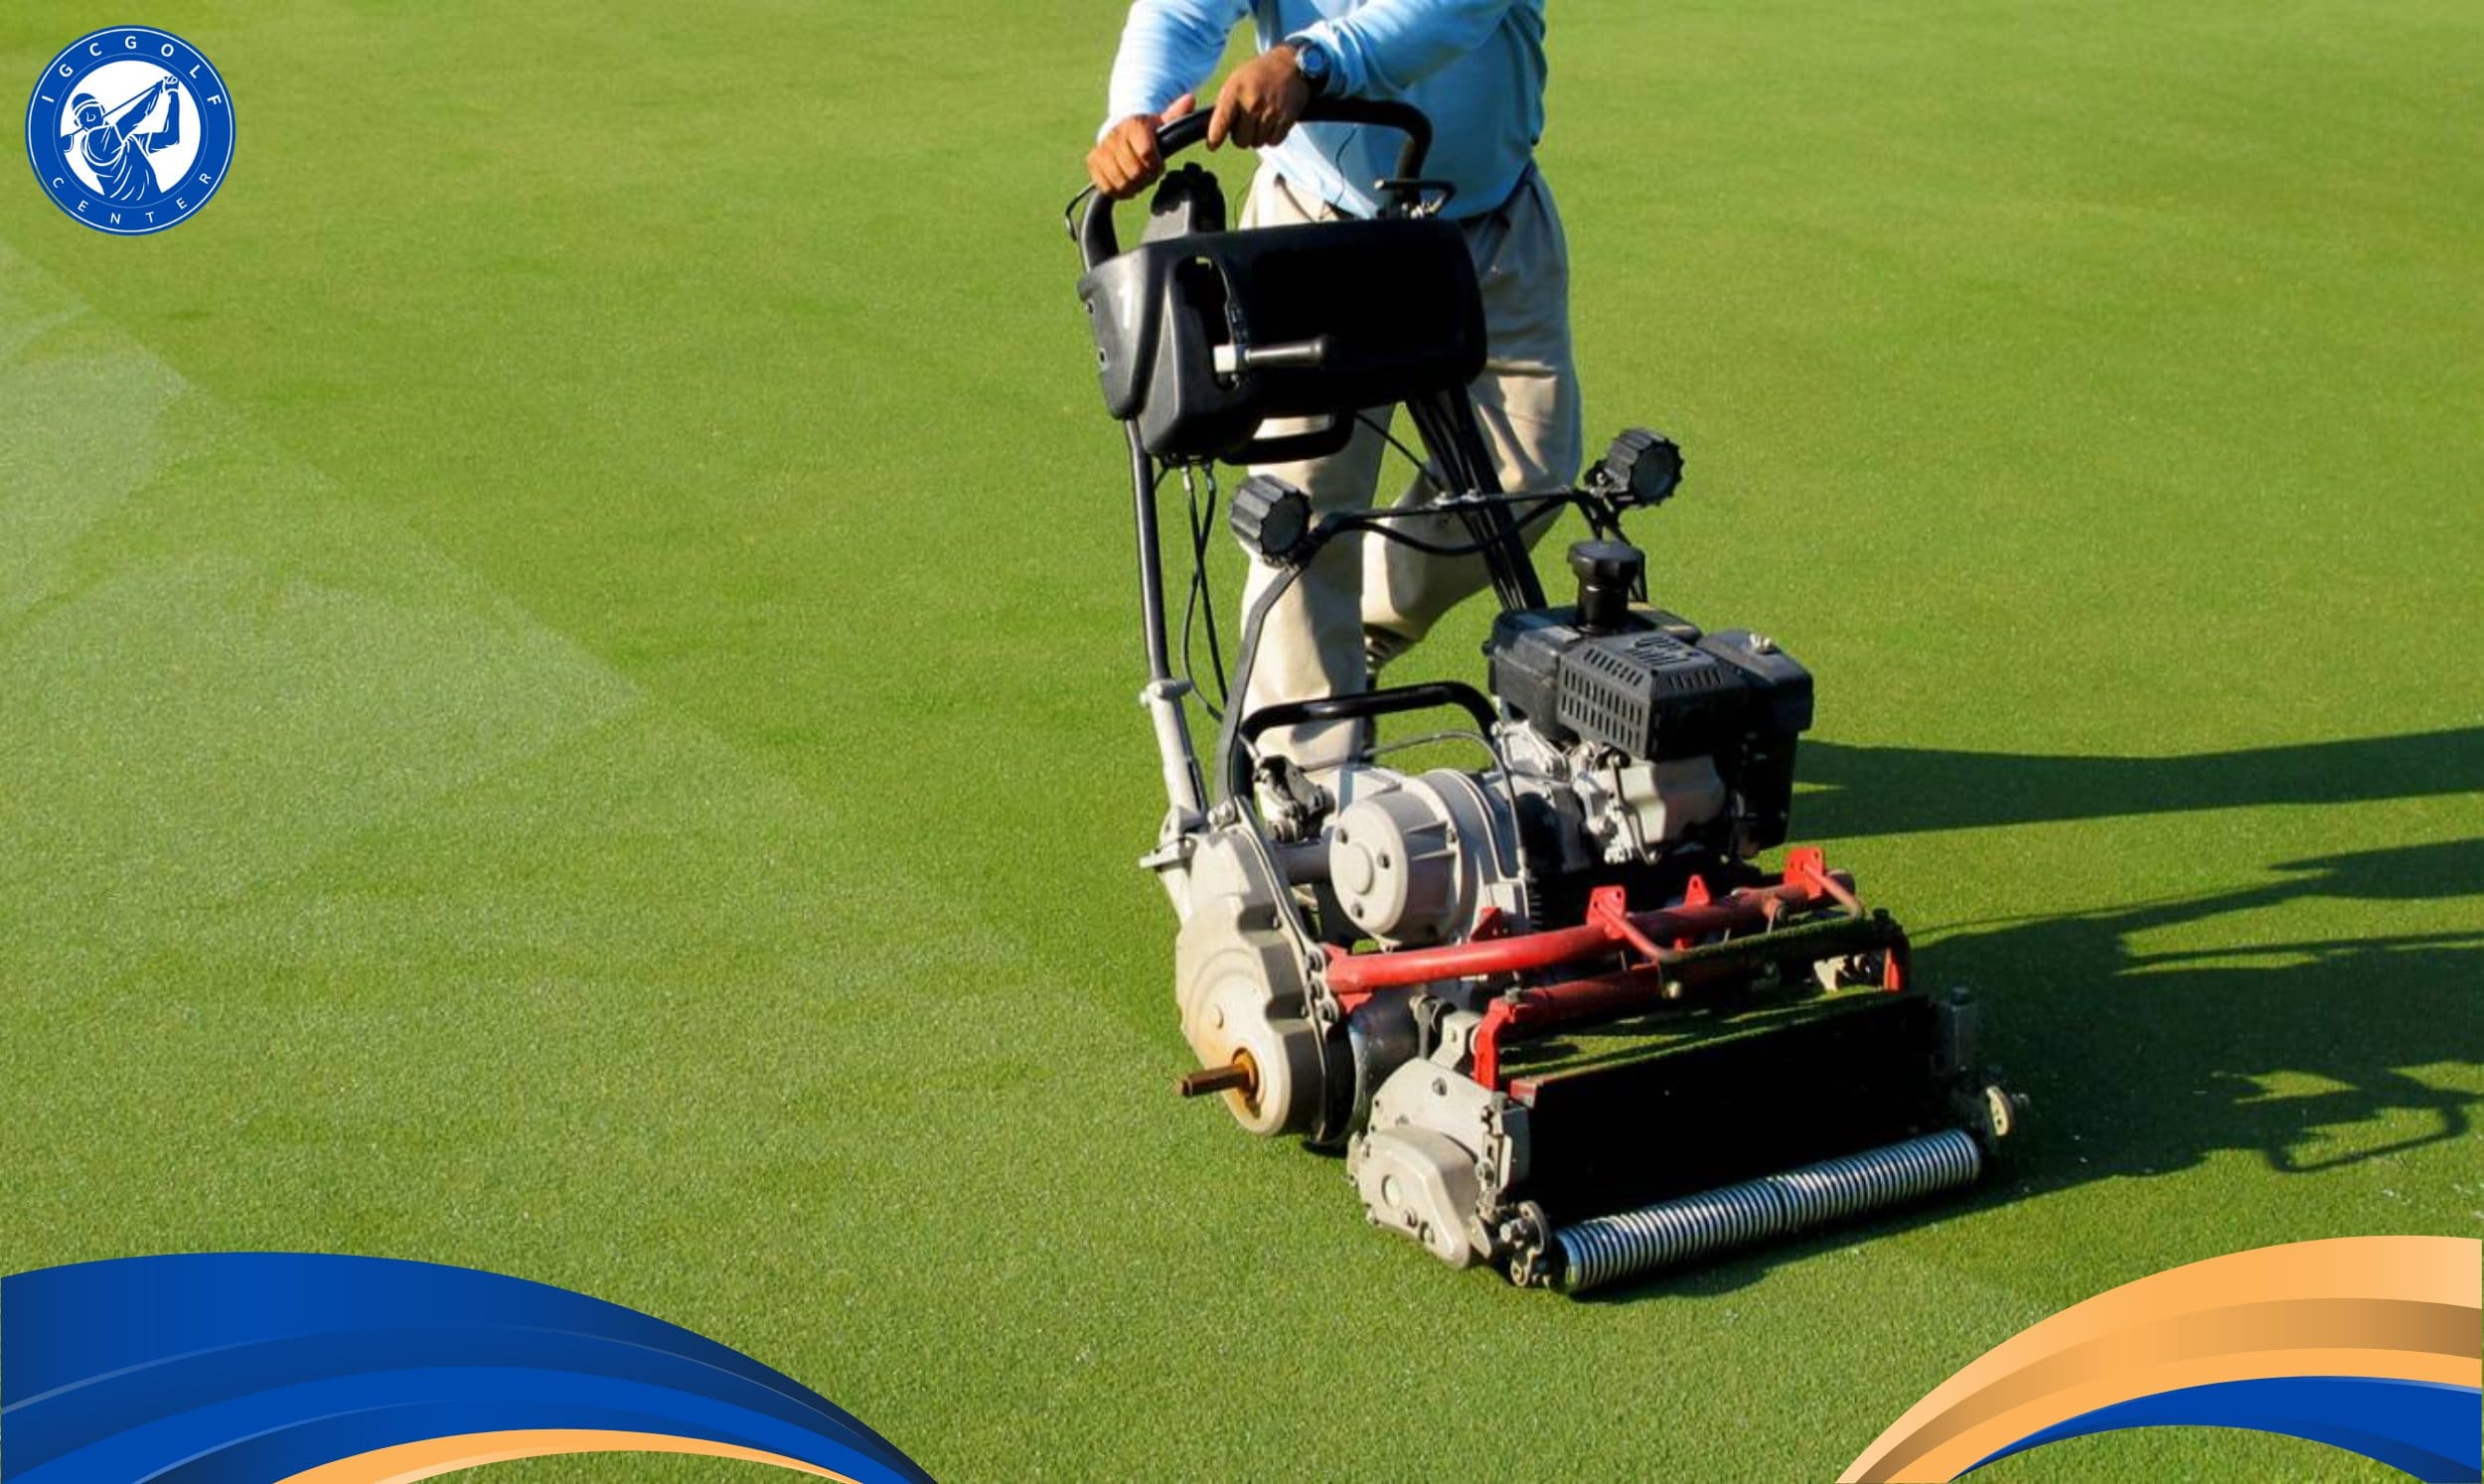 Chuyên gia hướng dẫn kỹ thuật chăm sóc cỏ sân golf chuẩn